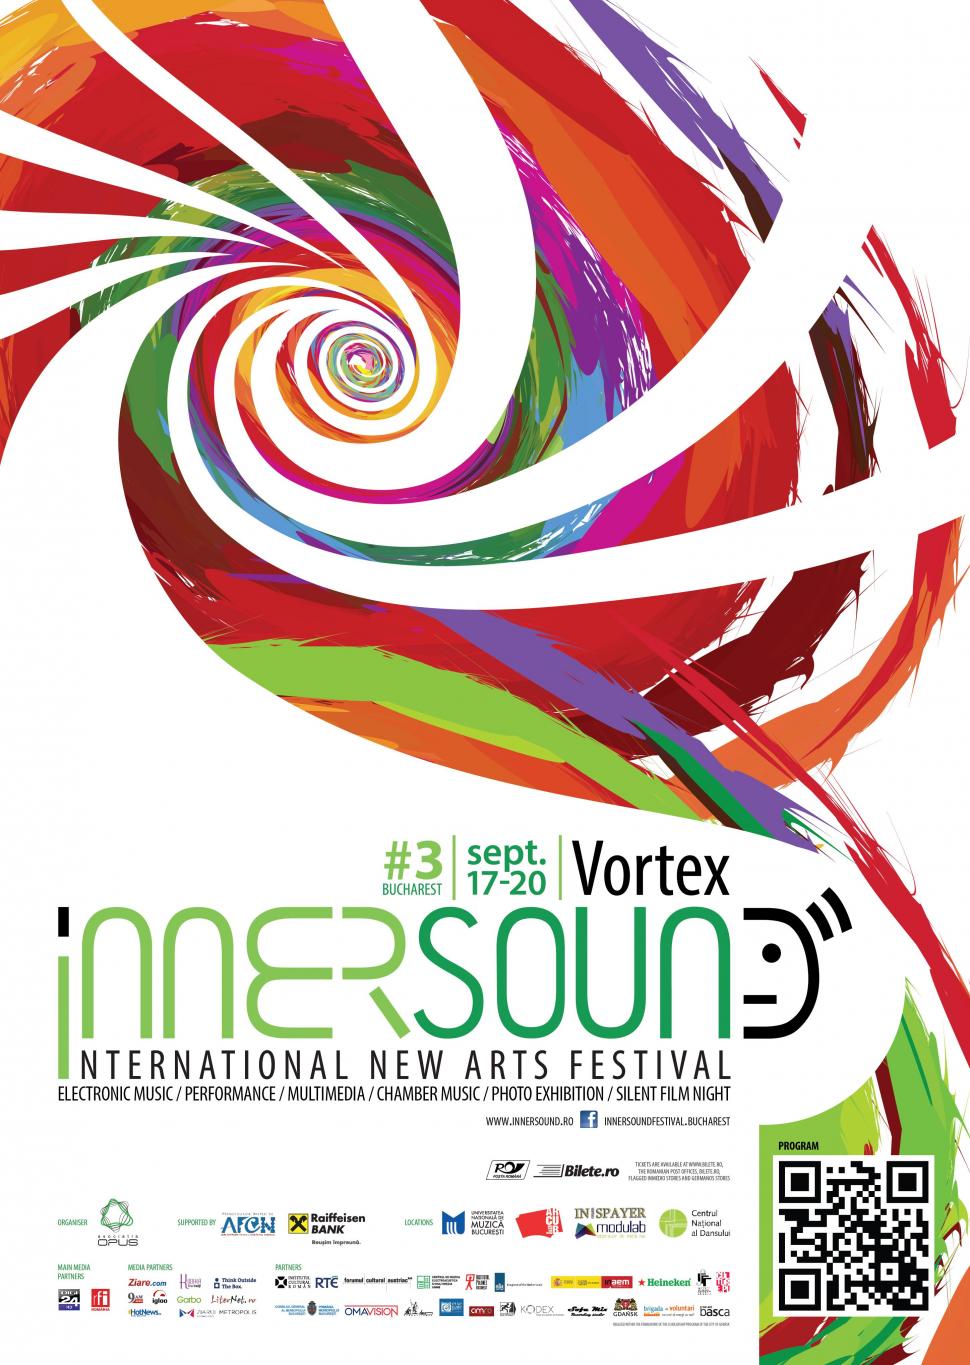 Festivalul Internaţional de Arte Noi InnerSound aduce la București peste 70 de artiști din 10 țări